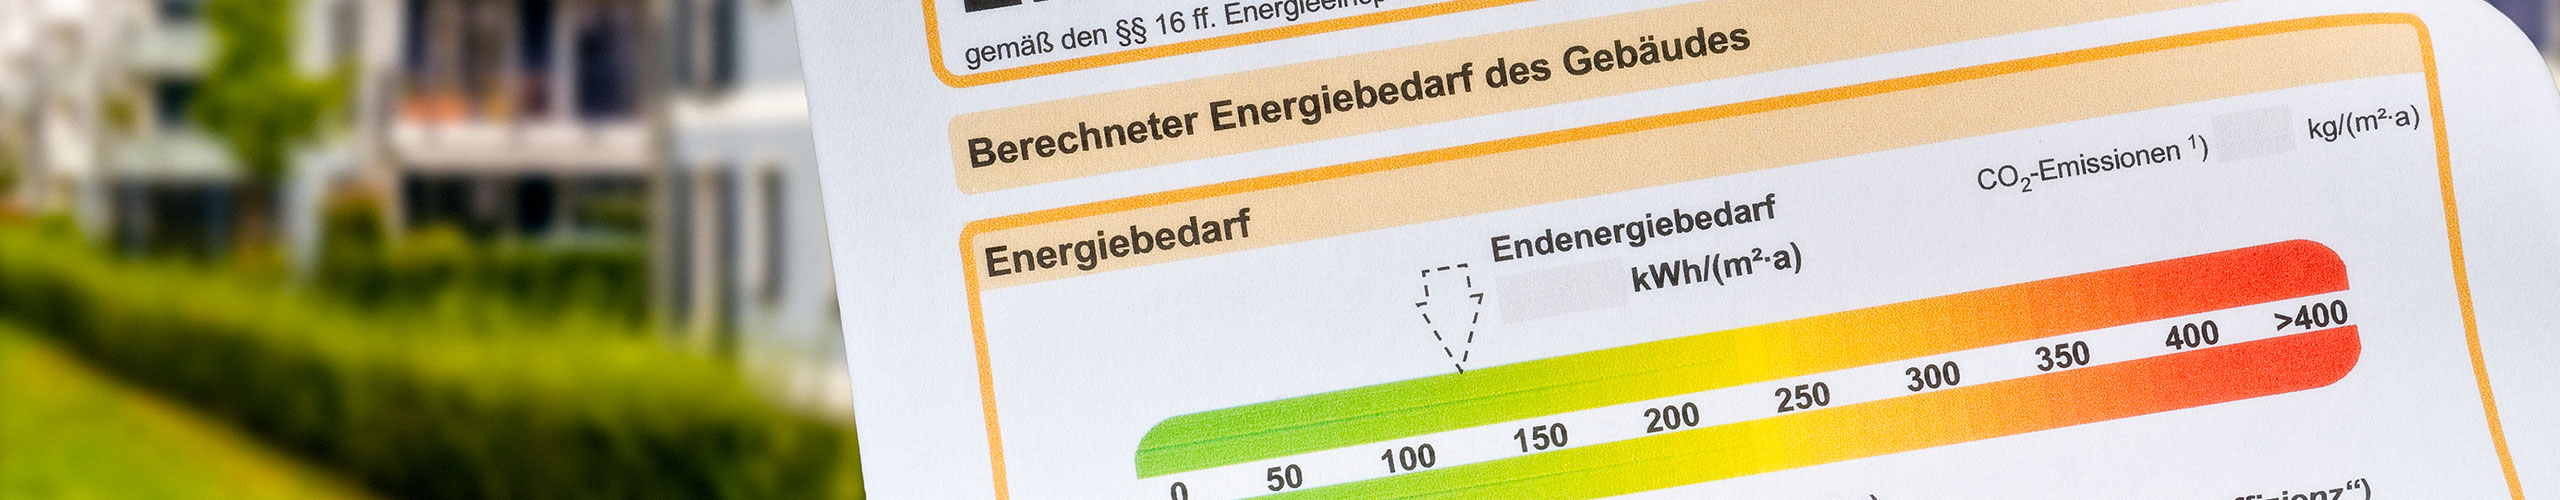 ean AKTUELL - Energieagentur Neckar-Odenwald-Kreis